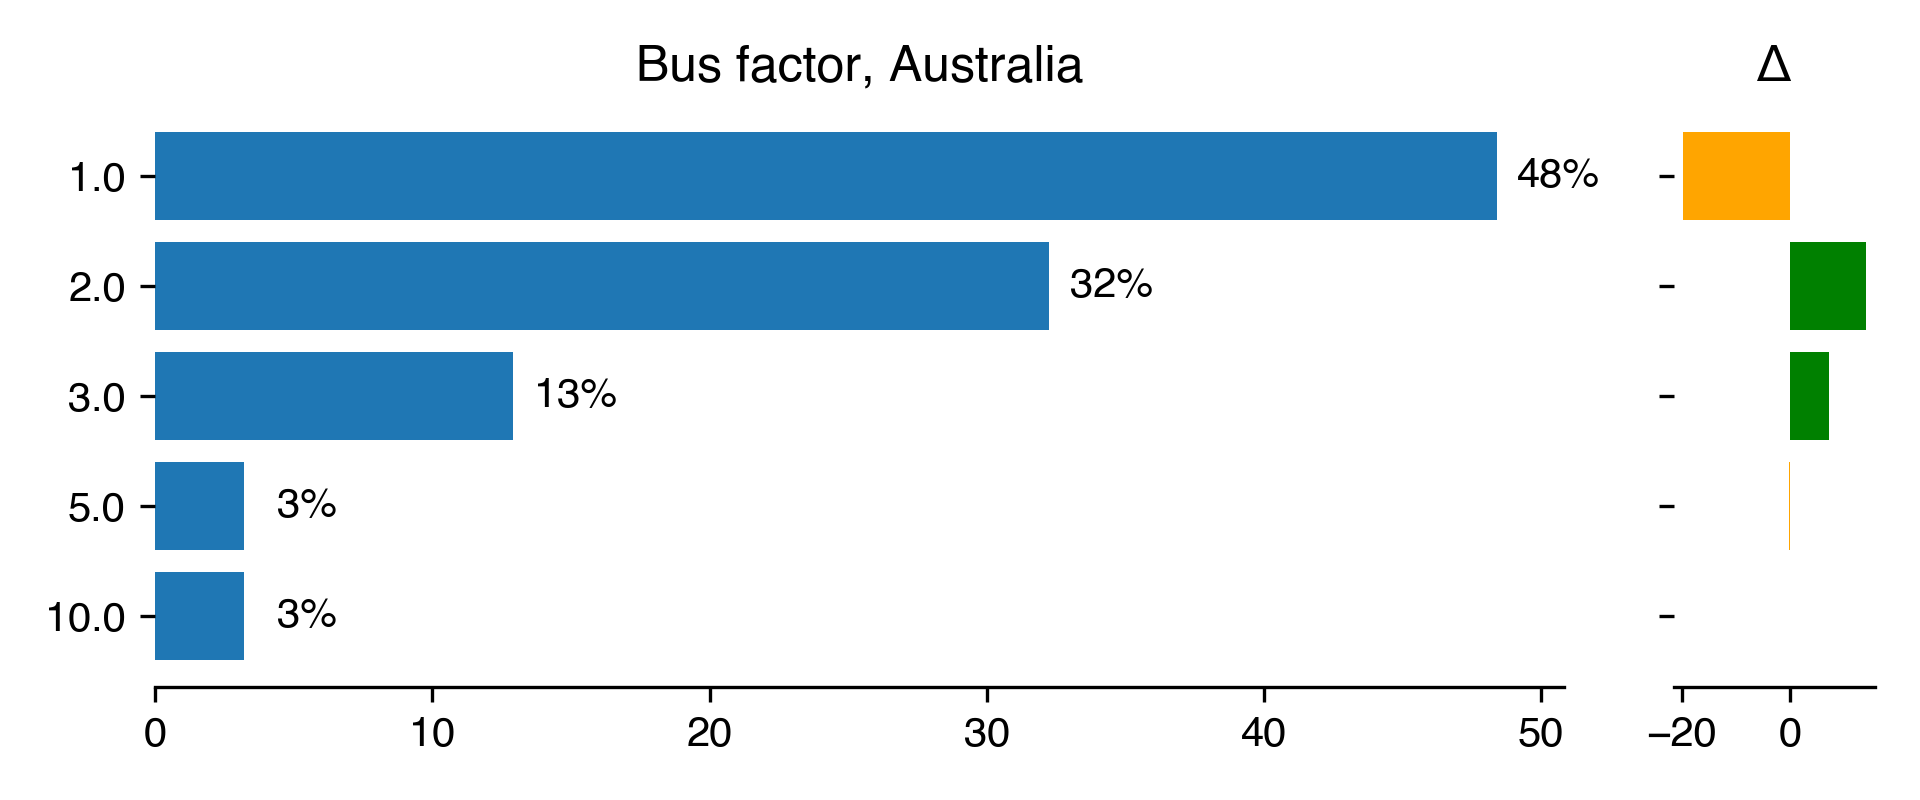 bus-factor